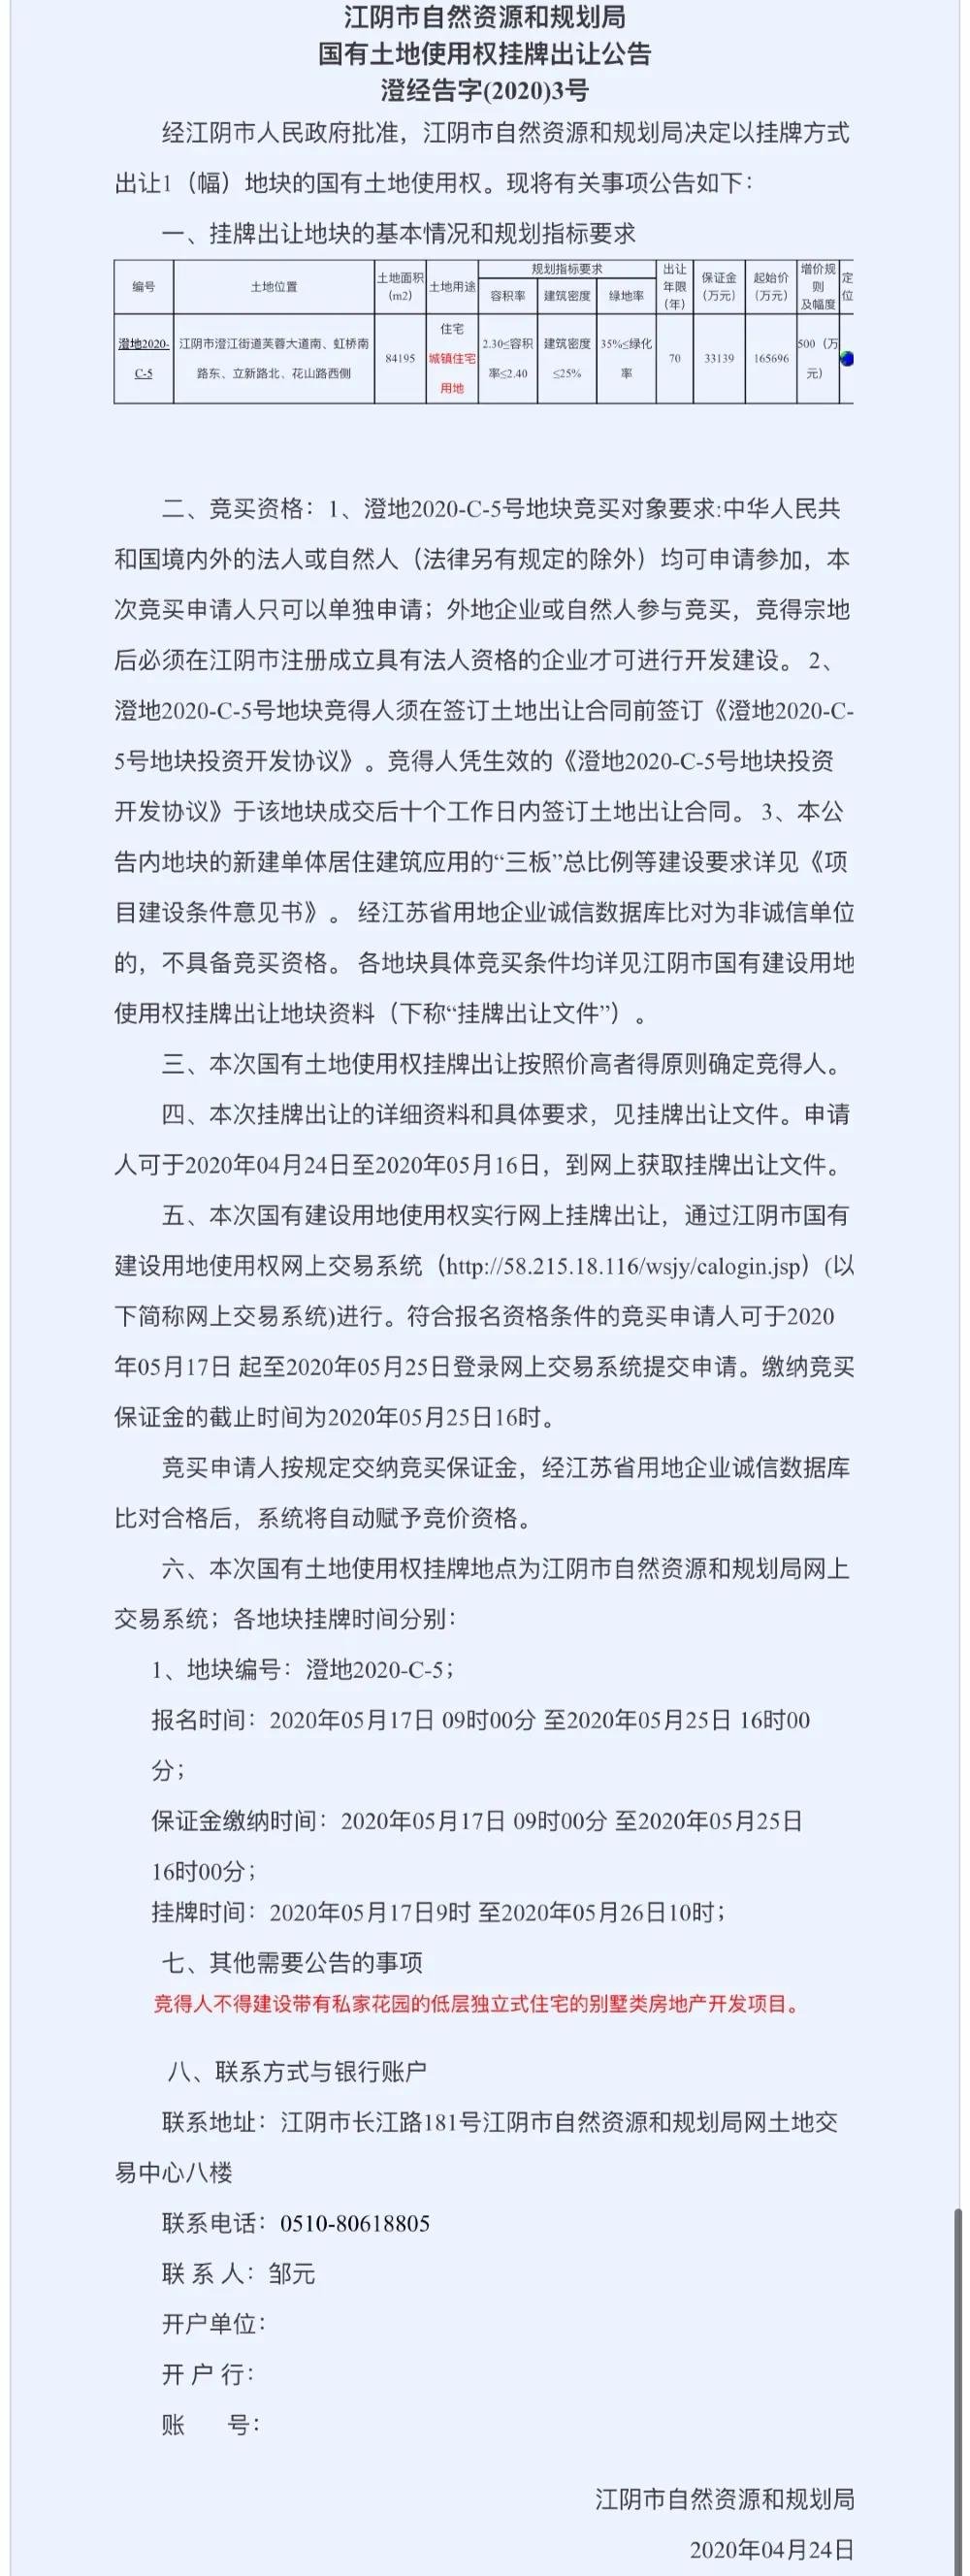 土拍预告|江阴城南再推优质宅地 5月26日16.57亿起拍